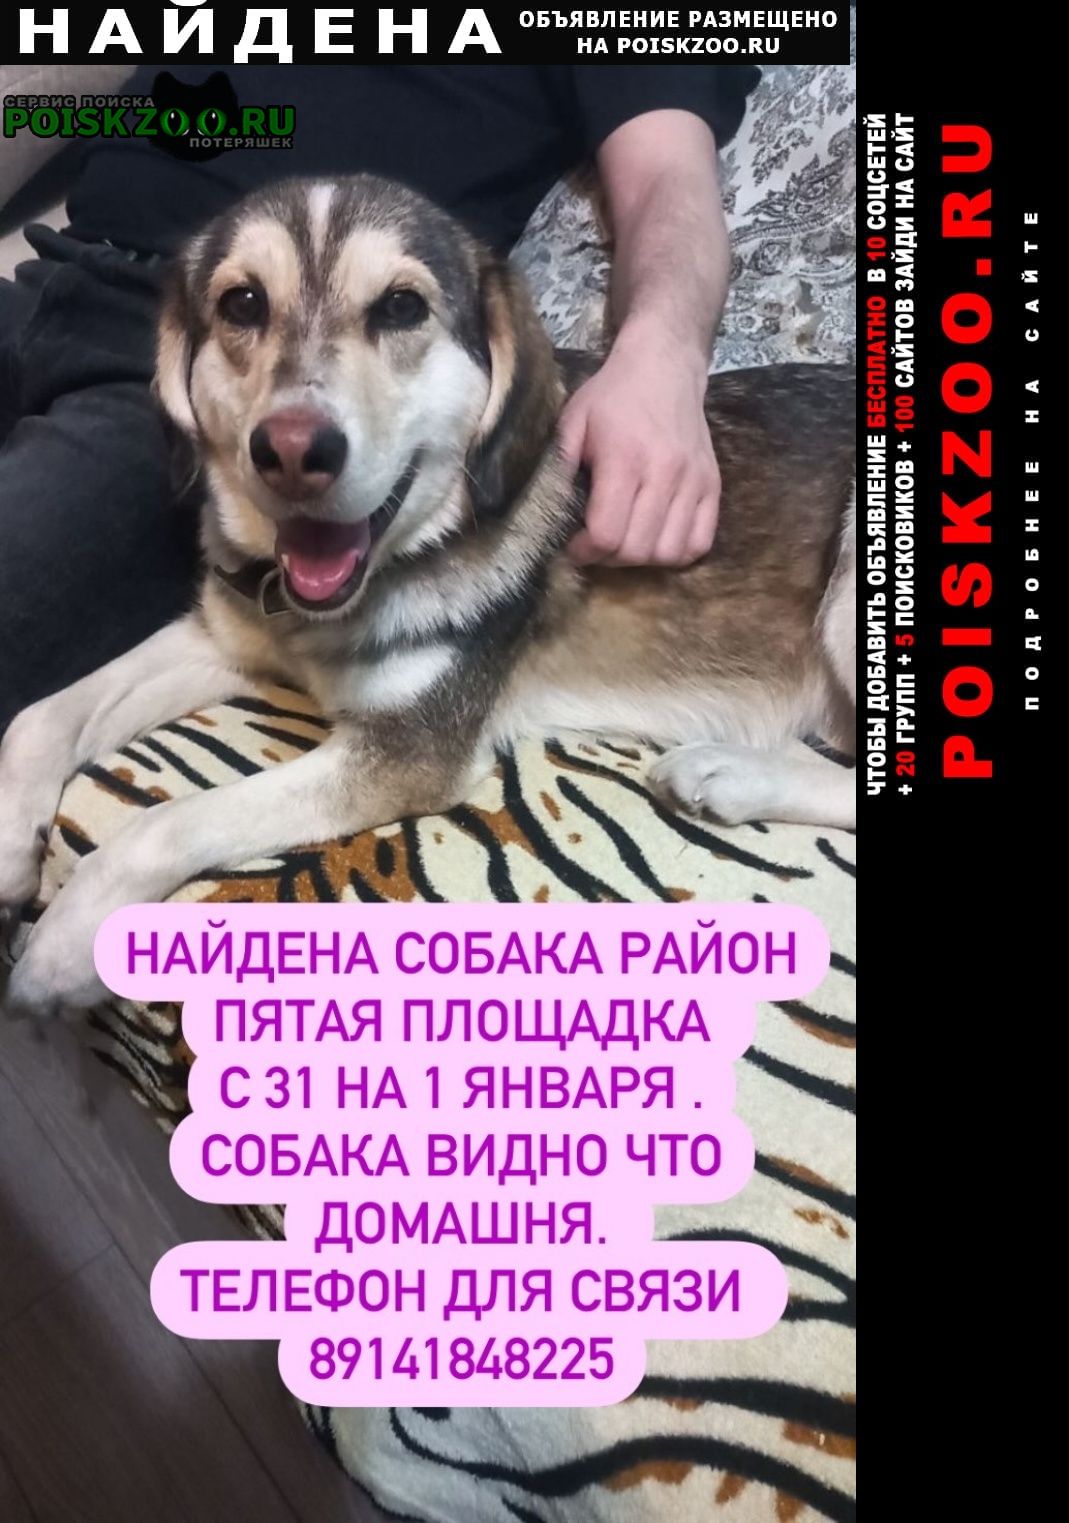 Найдена собака район патая площадка, х Хабаровск